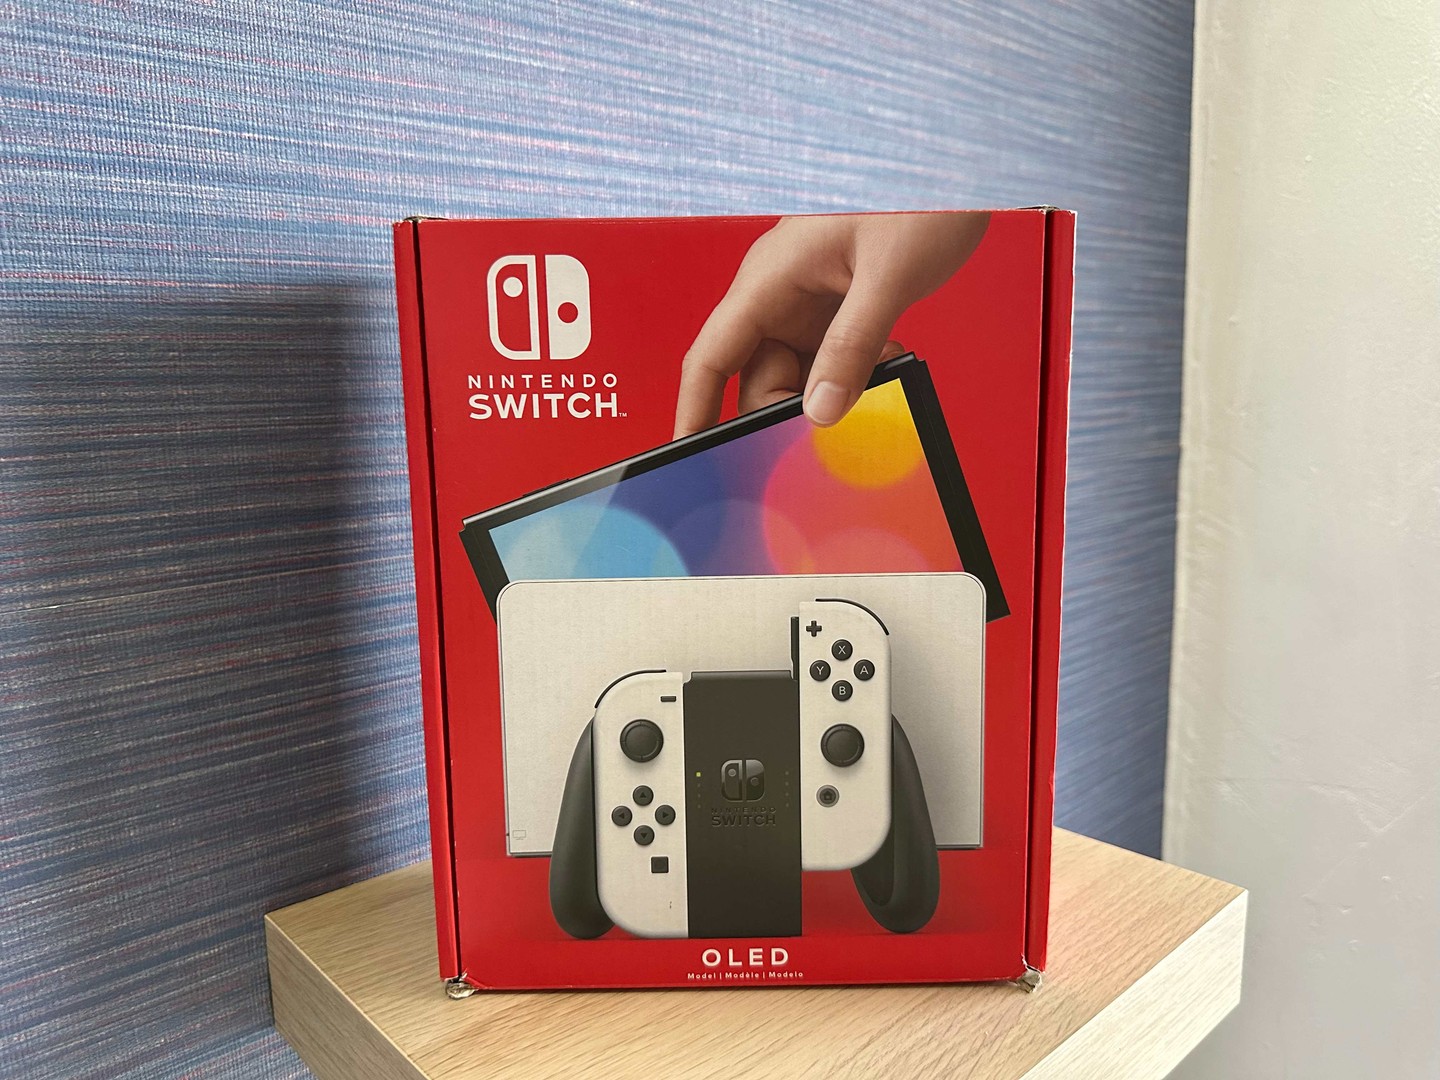 consolas y videojuegos - Vendo Nintendo Switch OLED Nuevo Sellado , Garantía ,Originales RD$ 20,500 NEG 0